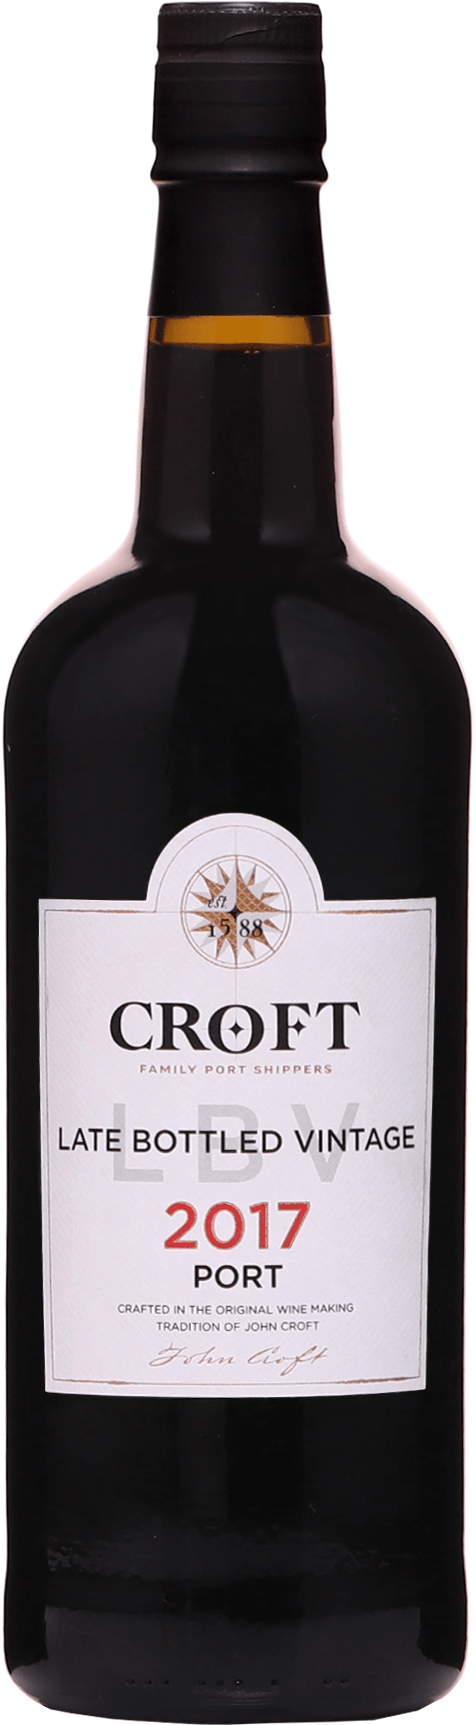 Croft Late Bottled Vintage Port 2017 20% 0,75l